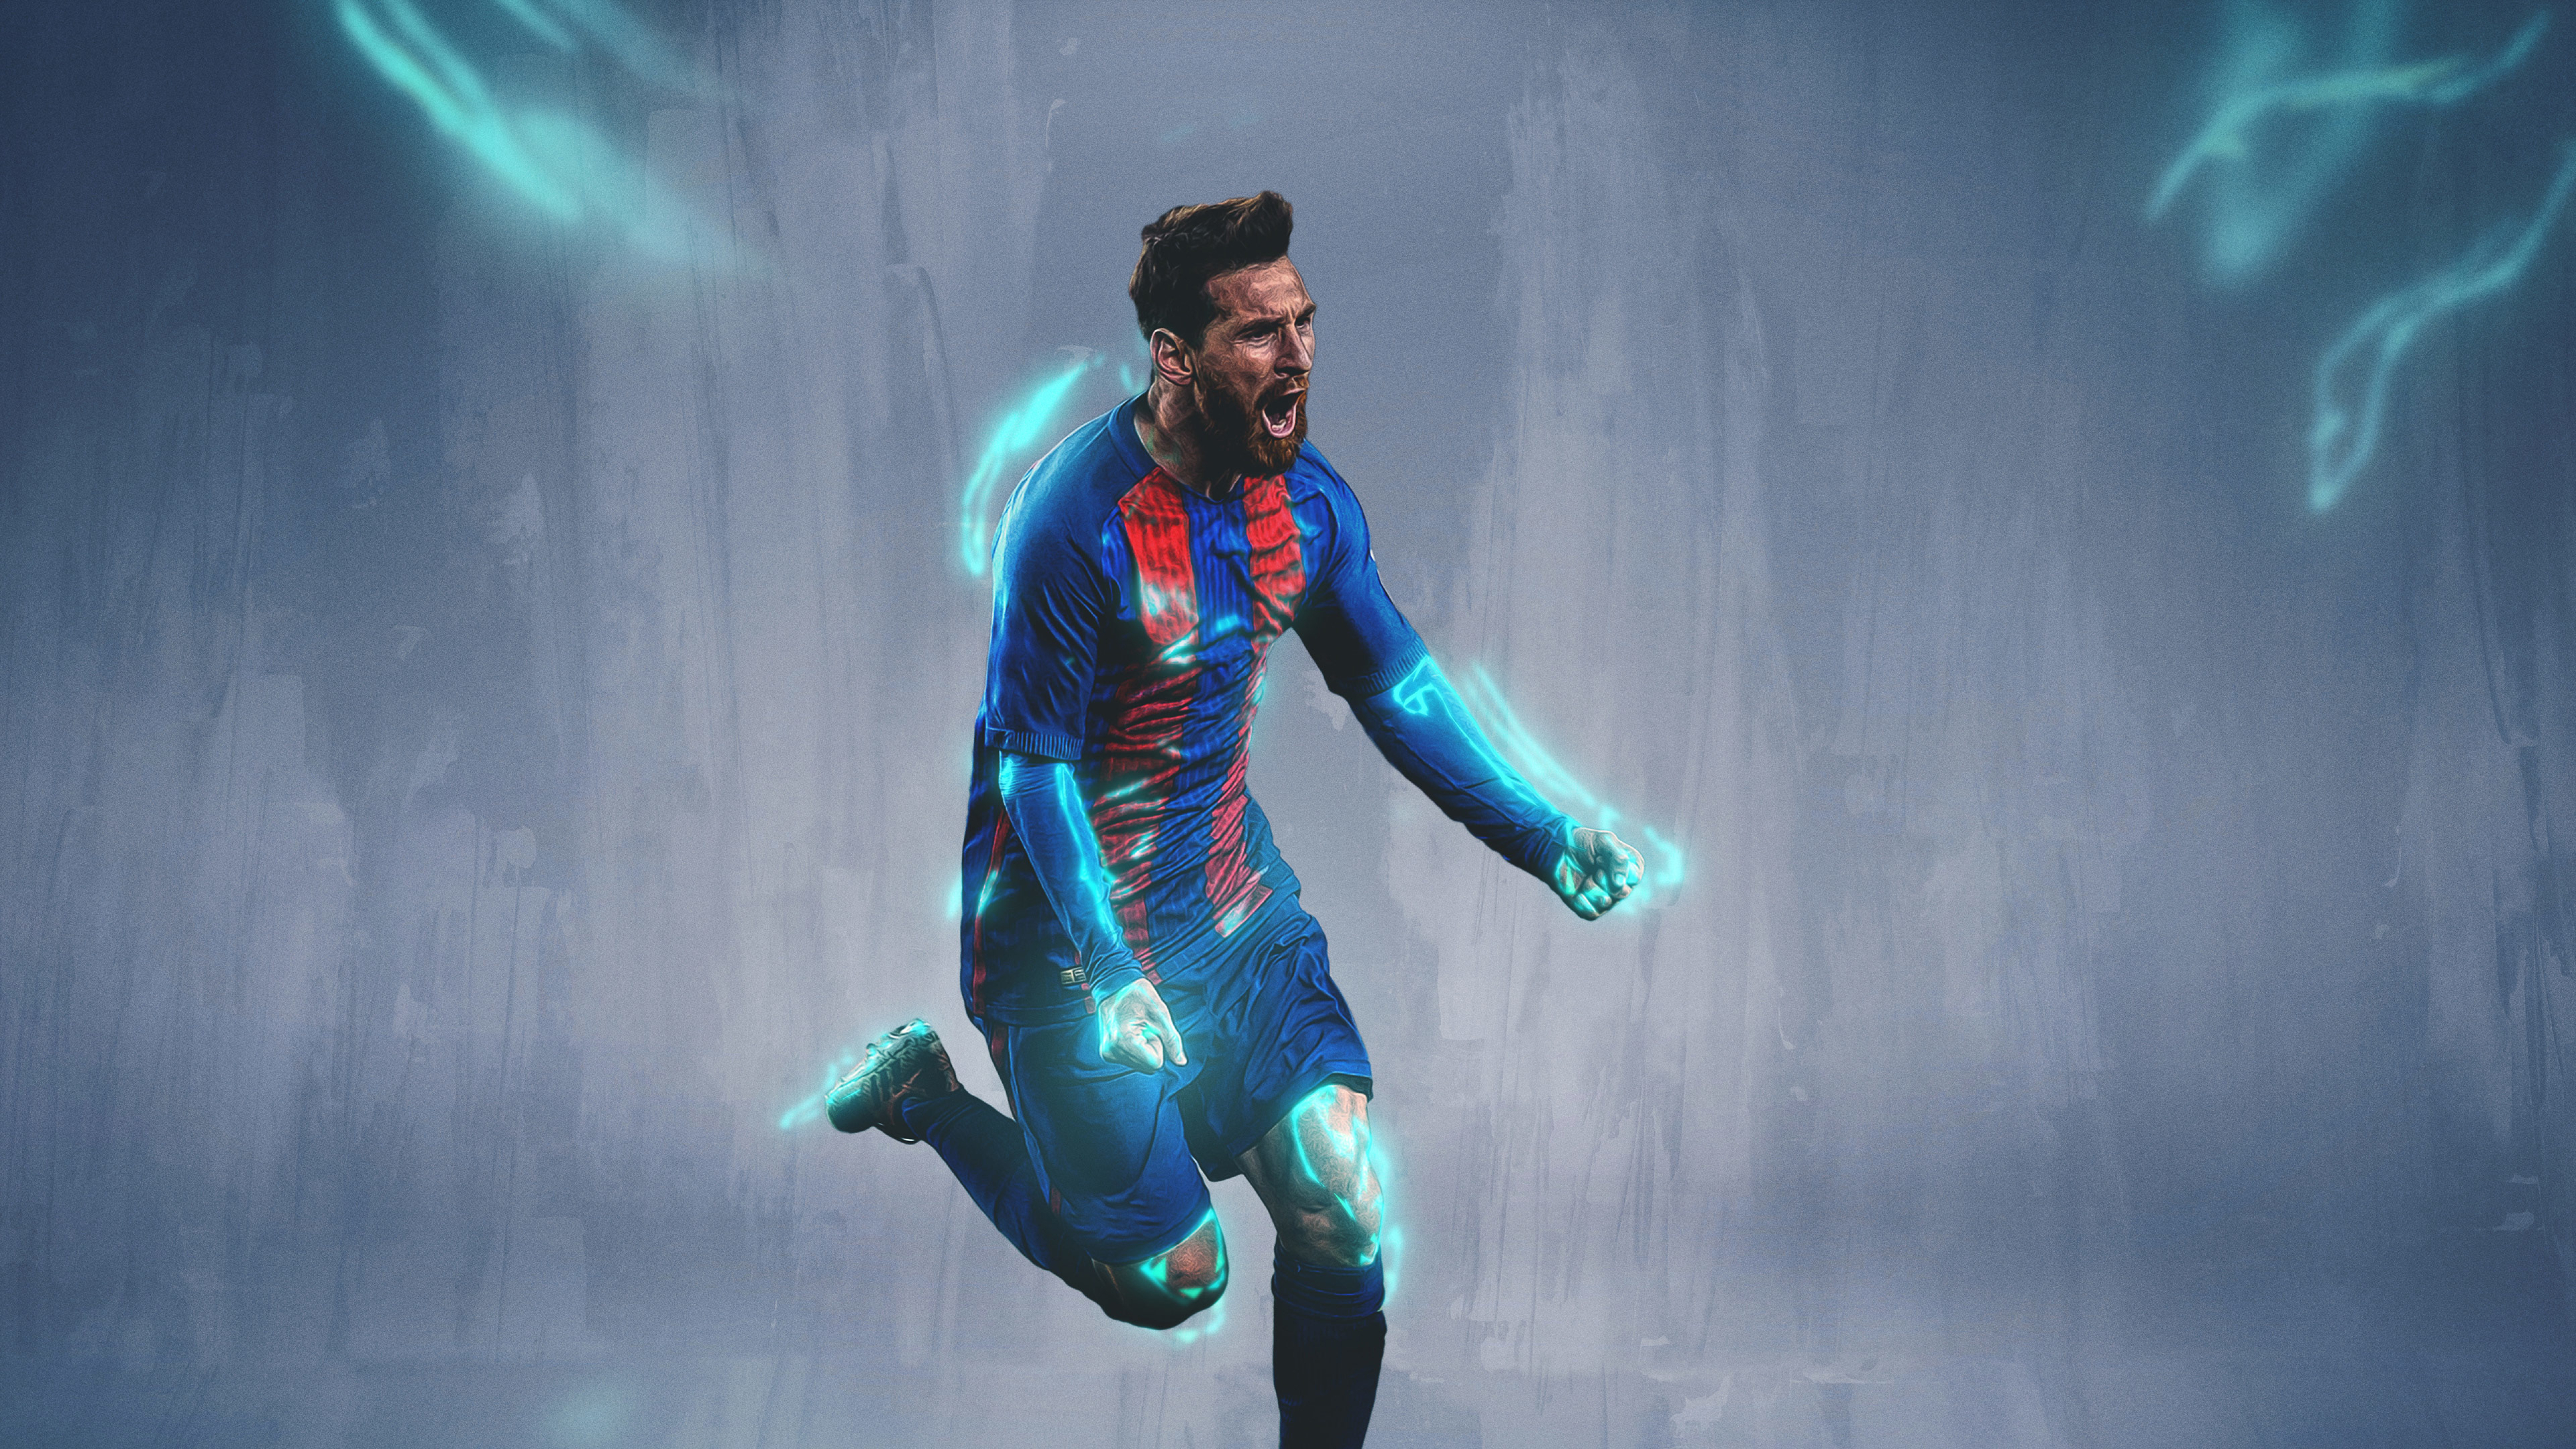 5120x2880 Lionel Messi 2019 5K Wallpaper, HD Sports 4K ...